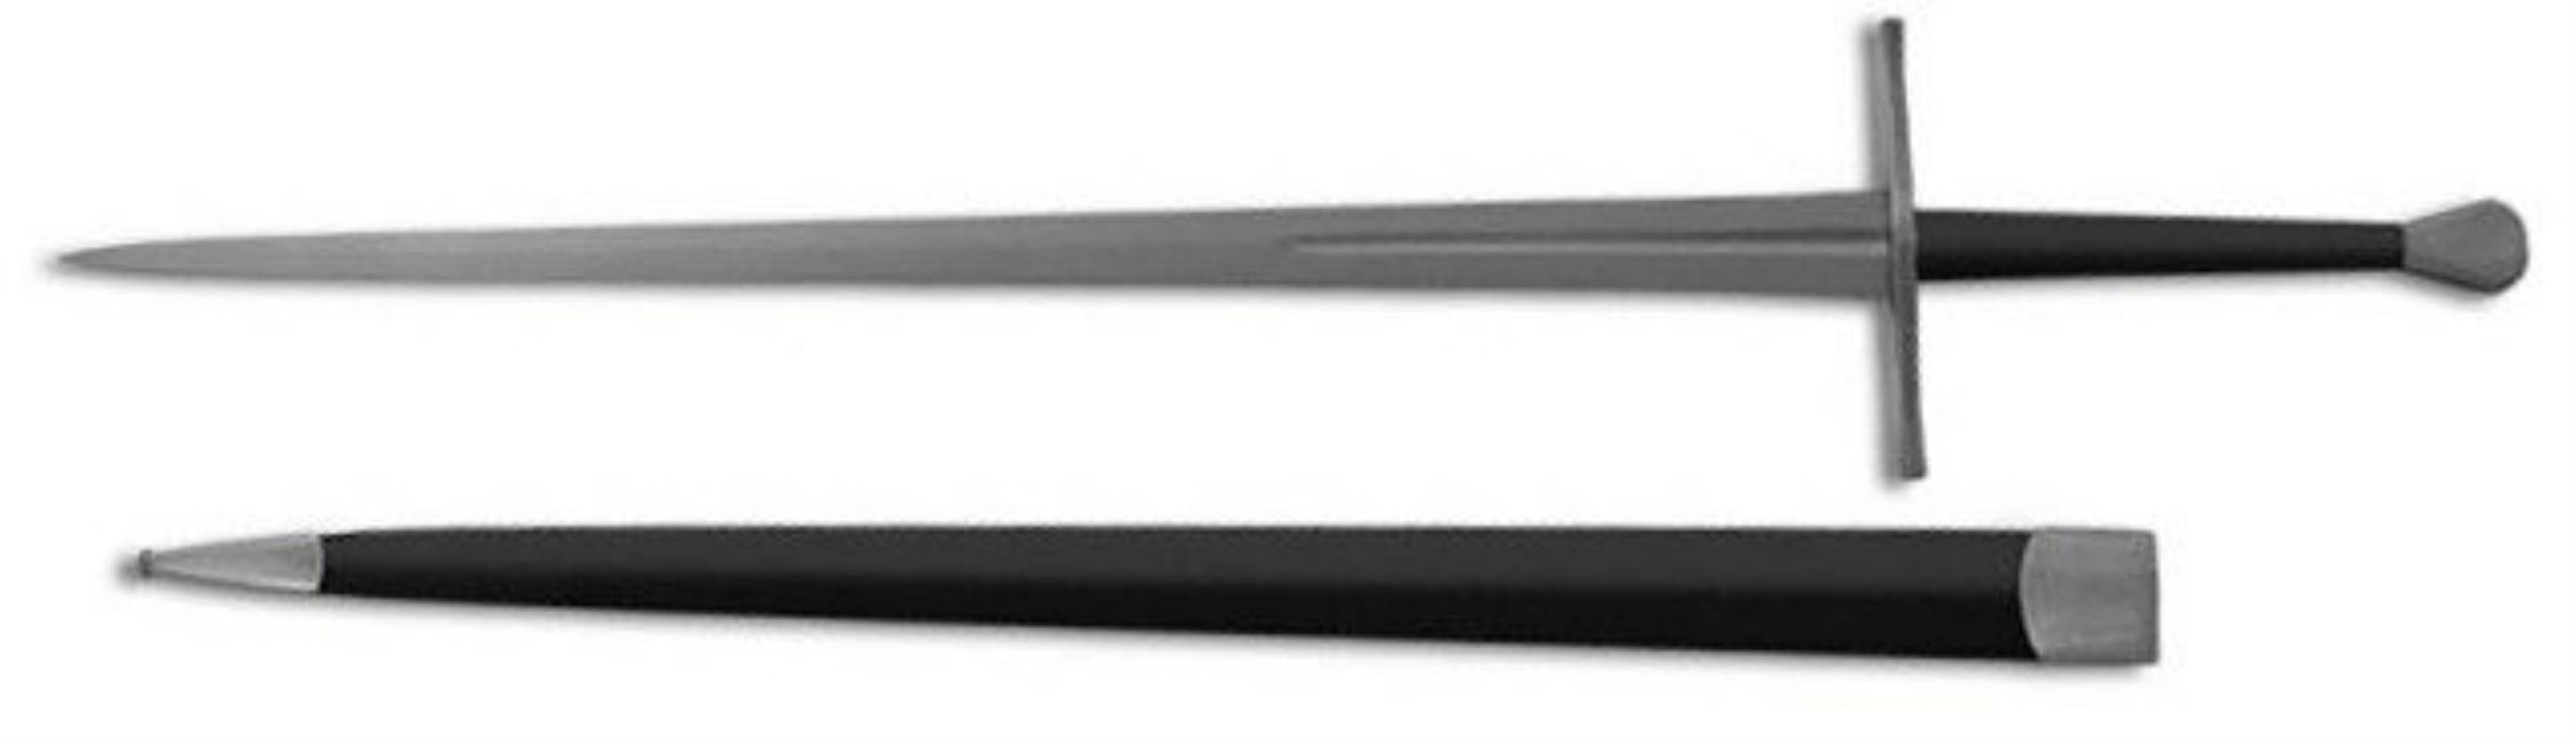 Tinker Long Sword - Sharp